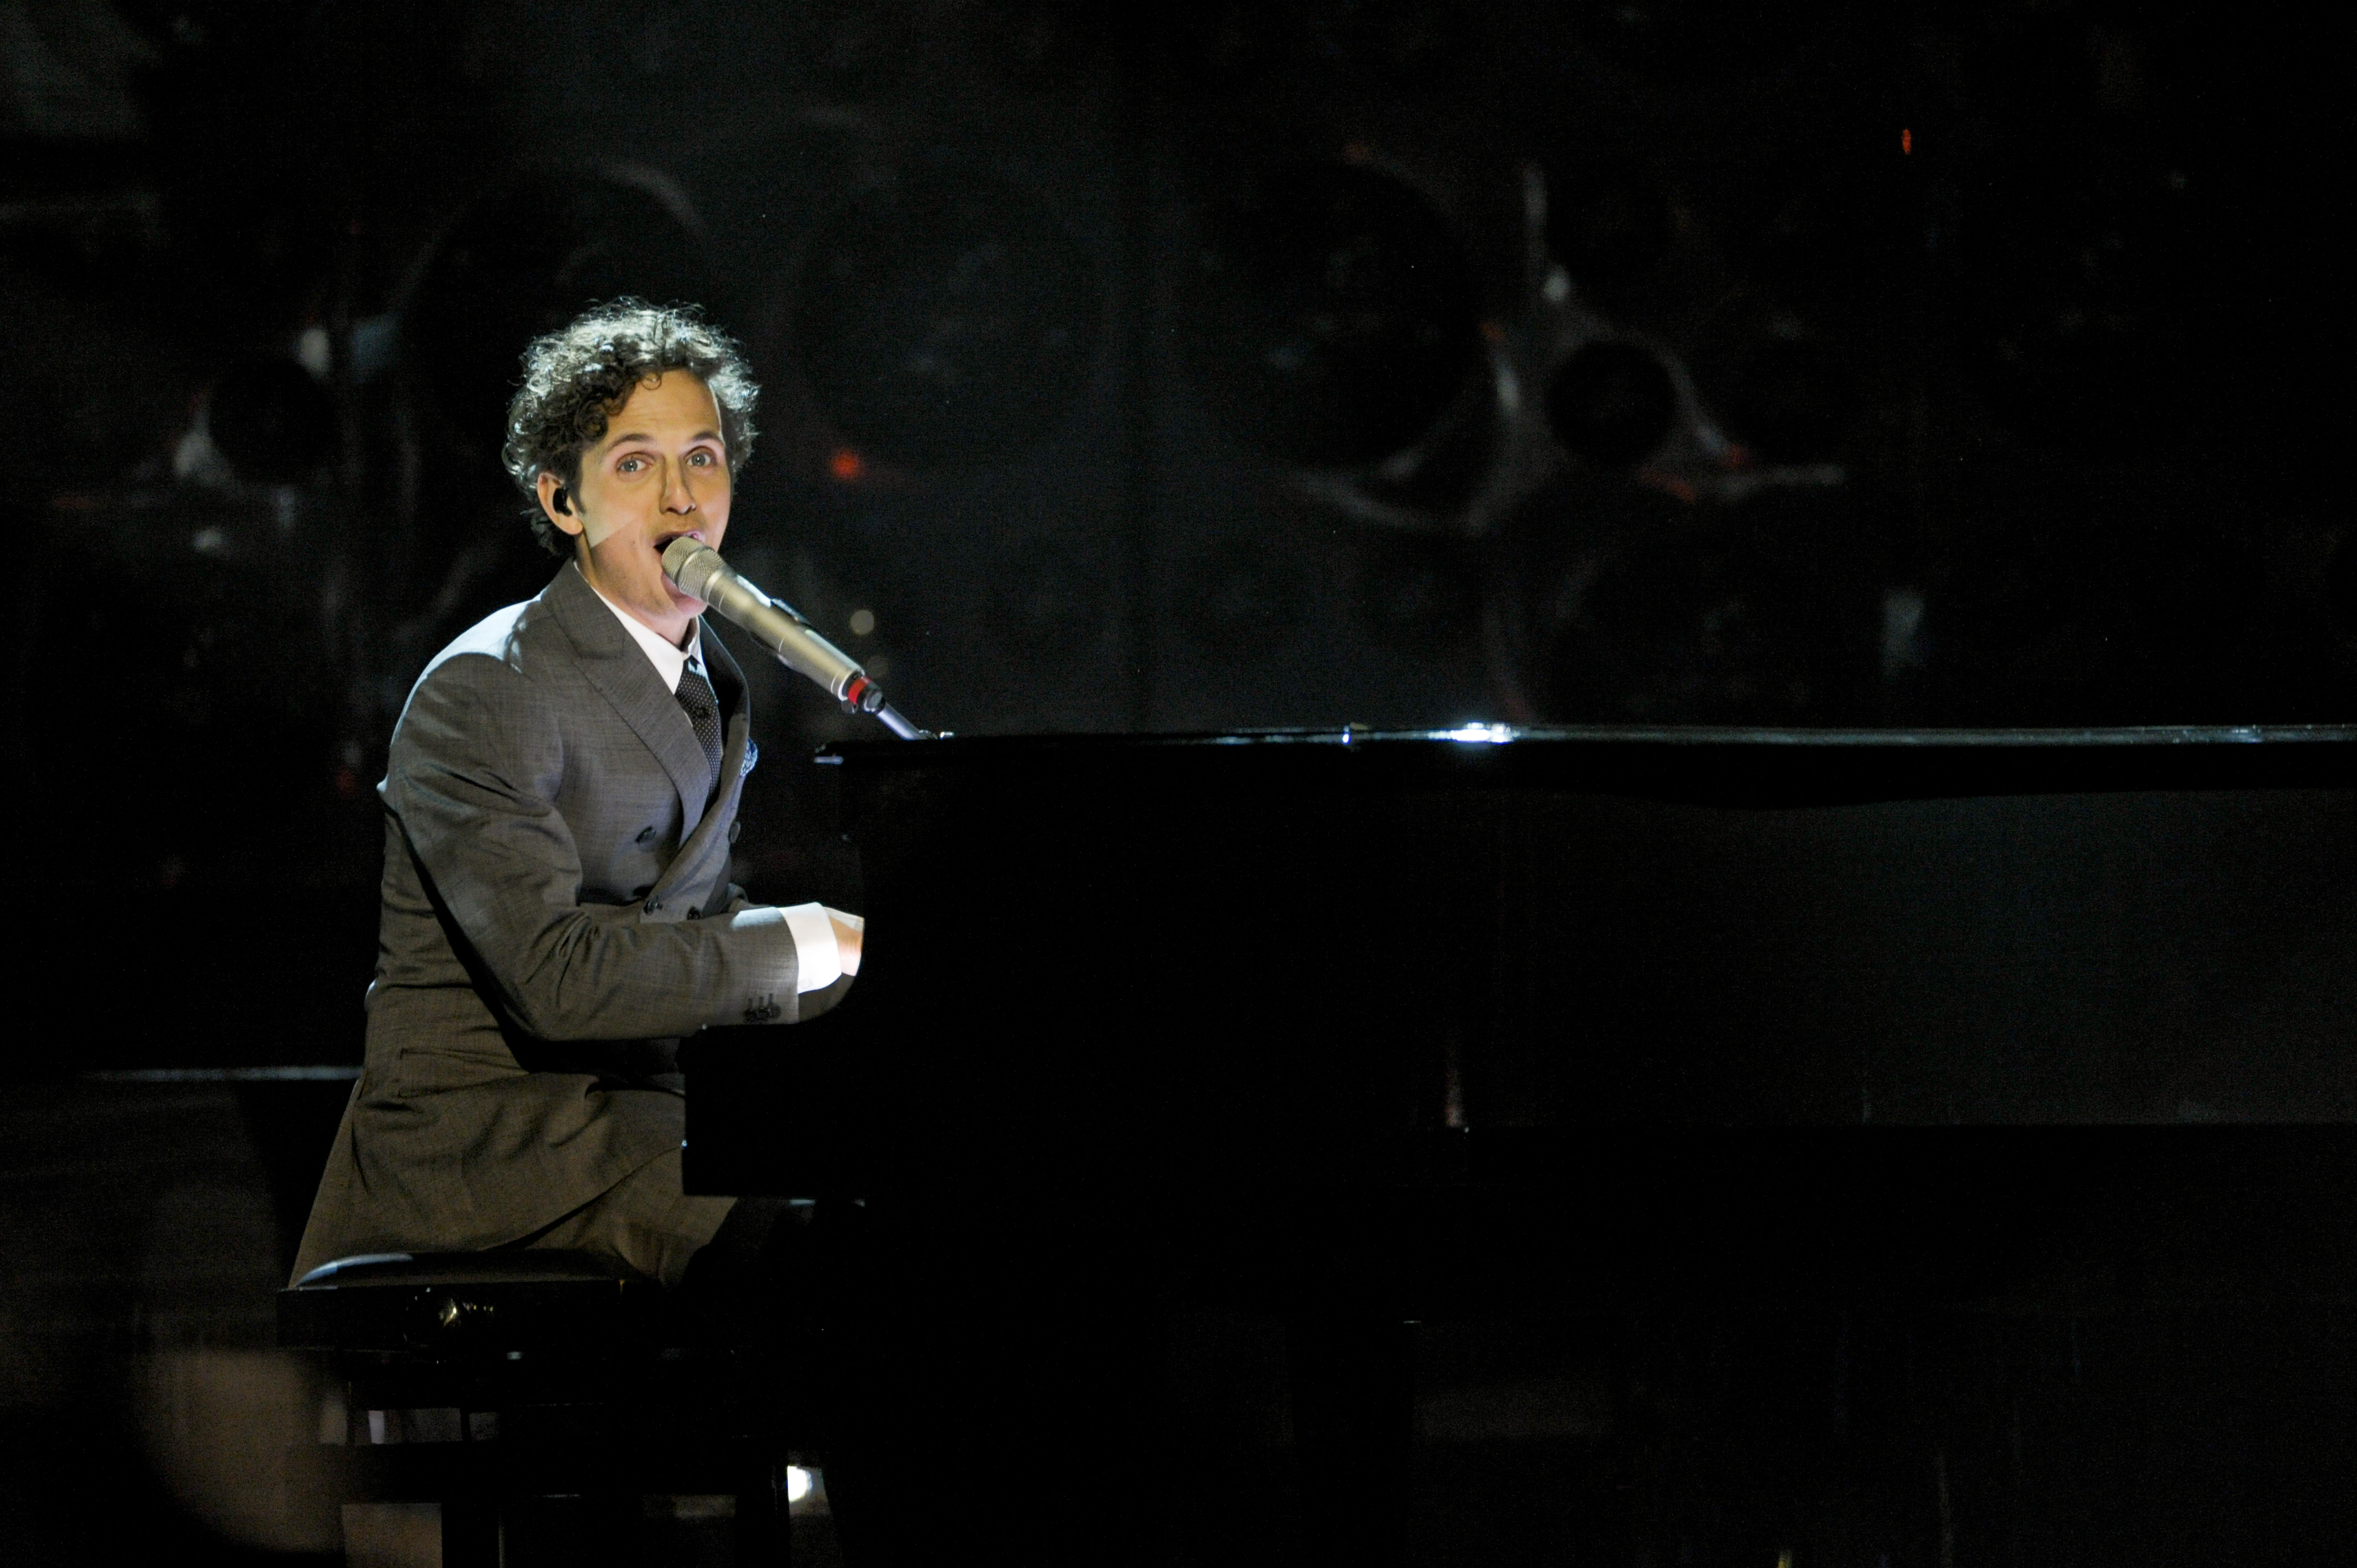 År 2010 kom han tvåa bakom Anna Bergendahl i Melodifestivalen.